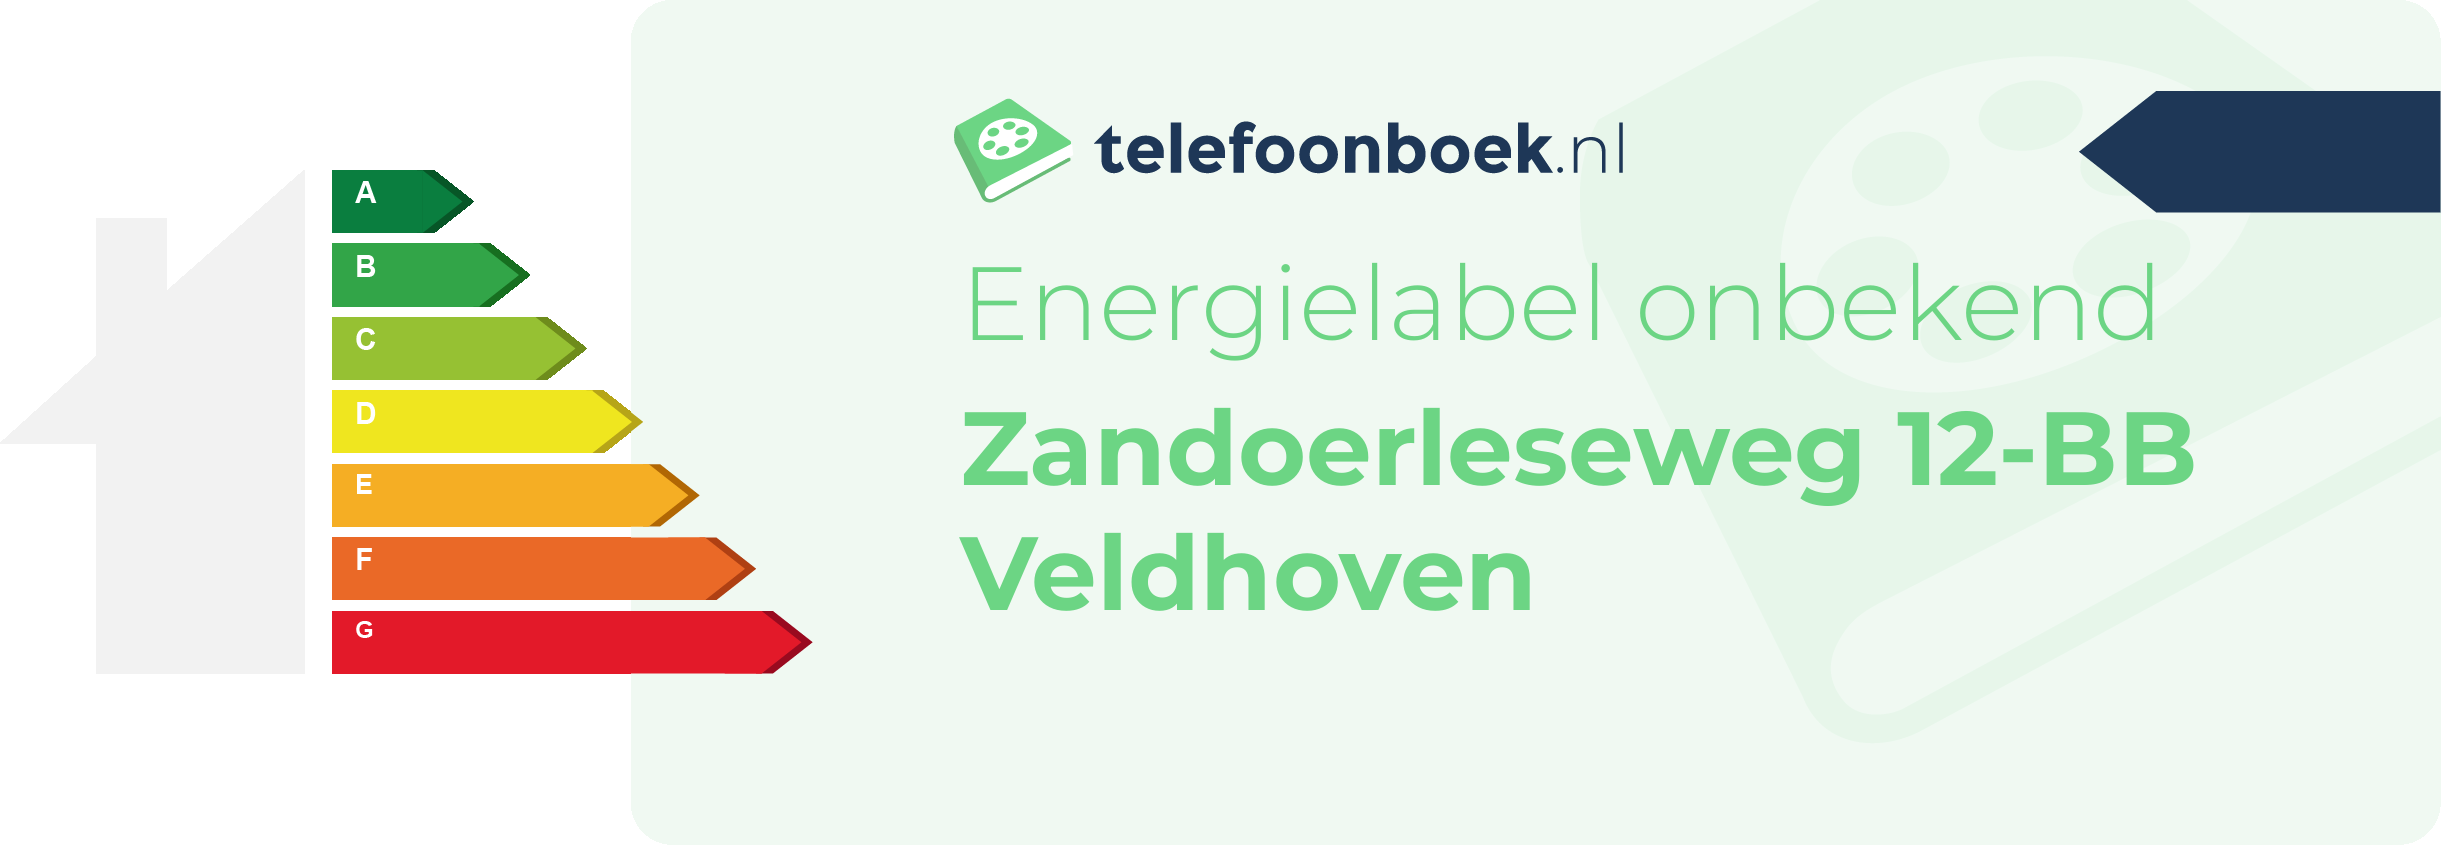 Energielabel Zandoerleseweg 12-BB Veldhoven